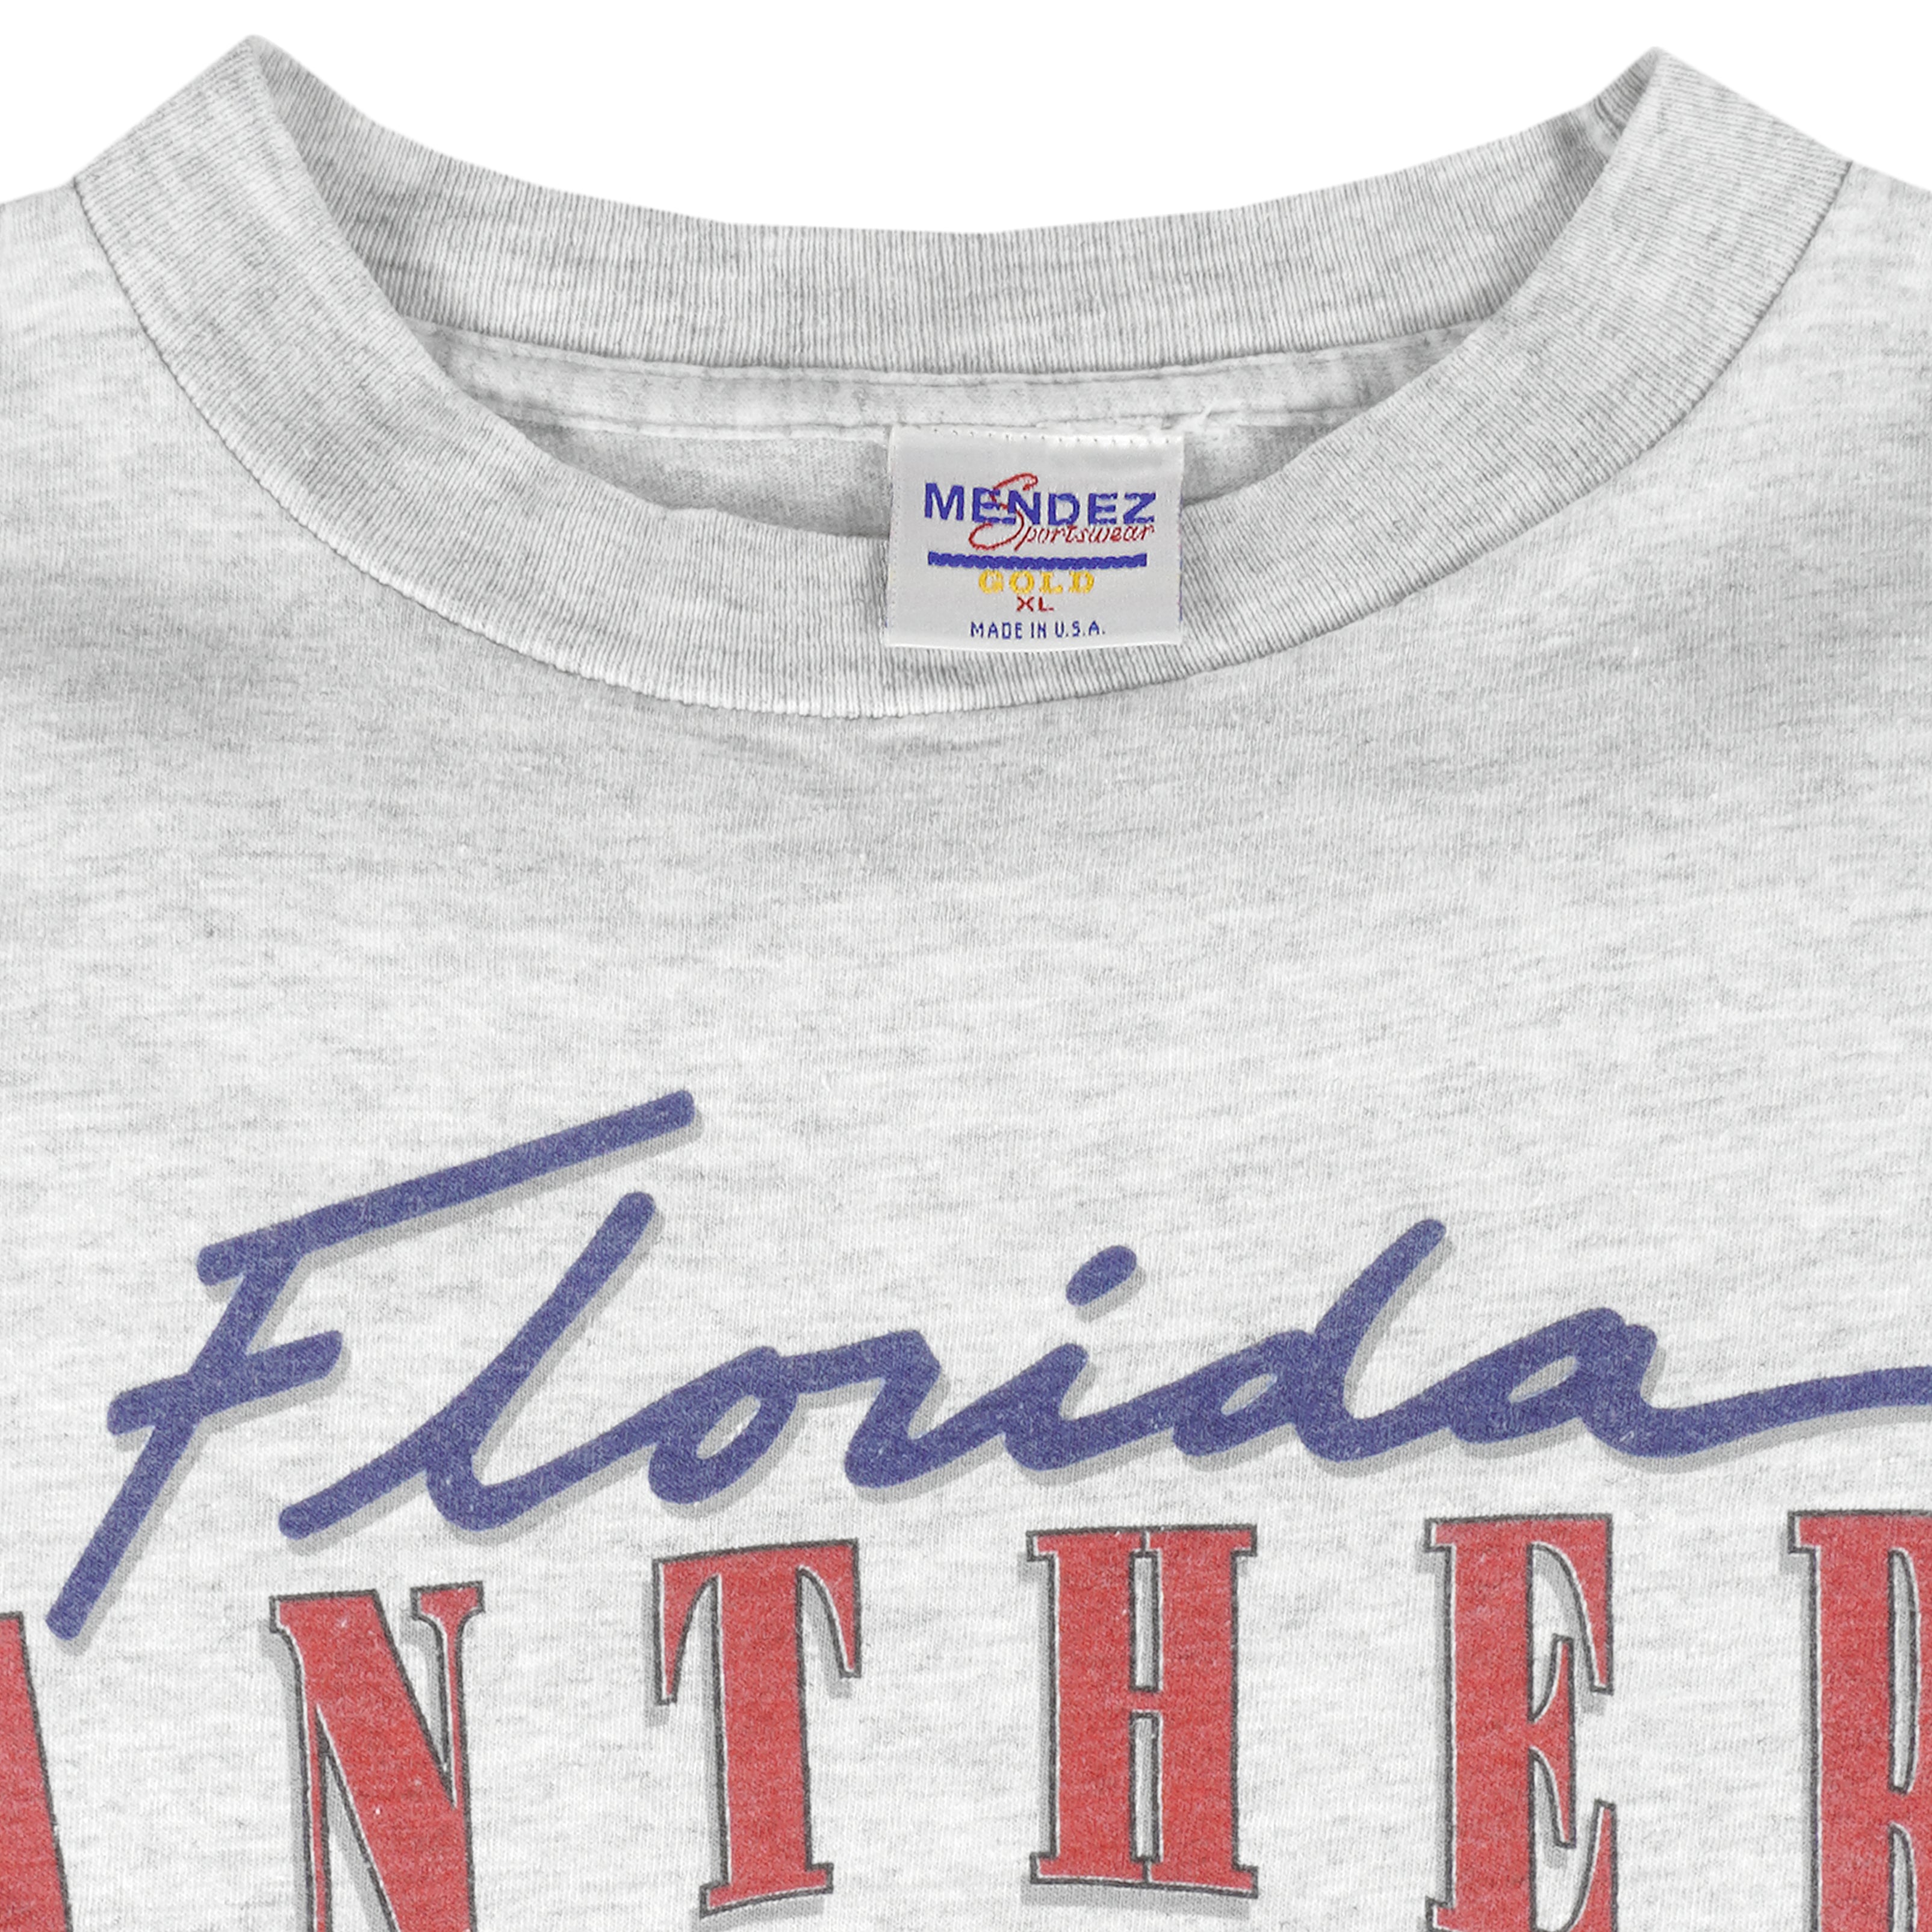 FLORIDA PANTHERS Jersey NHL HOCKEY VINTAGE L/XL STARTER STITCHED Patch Logo